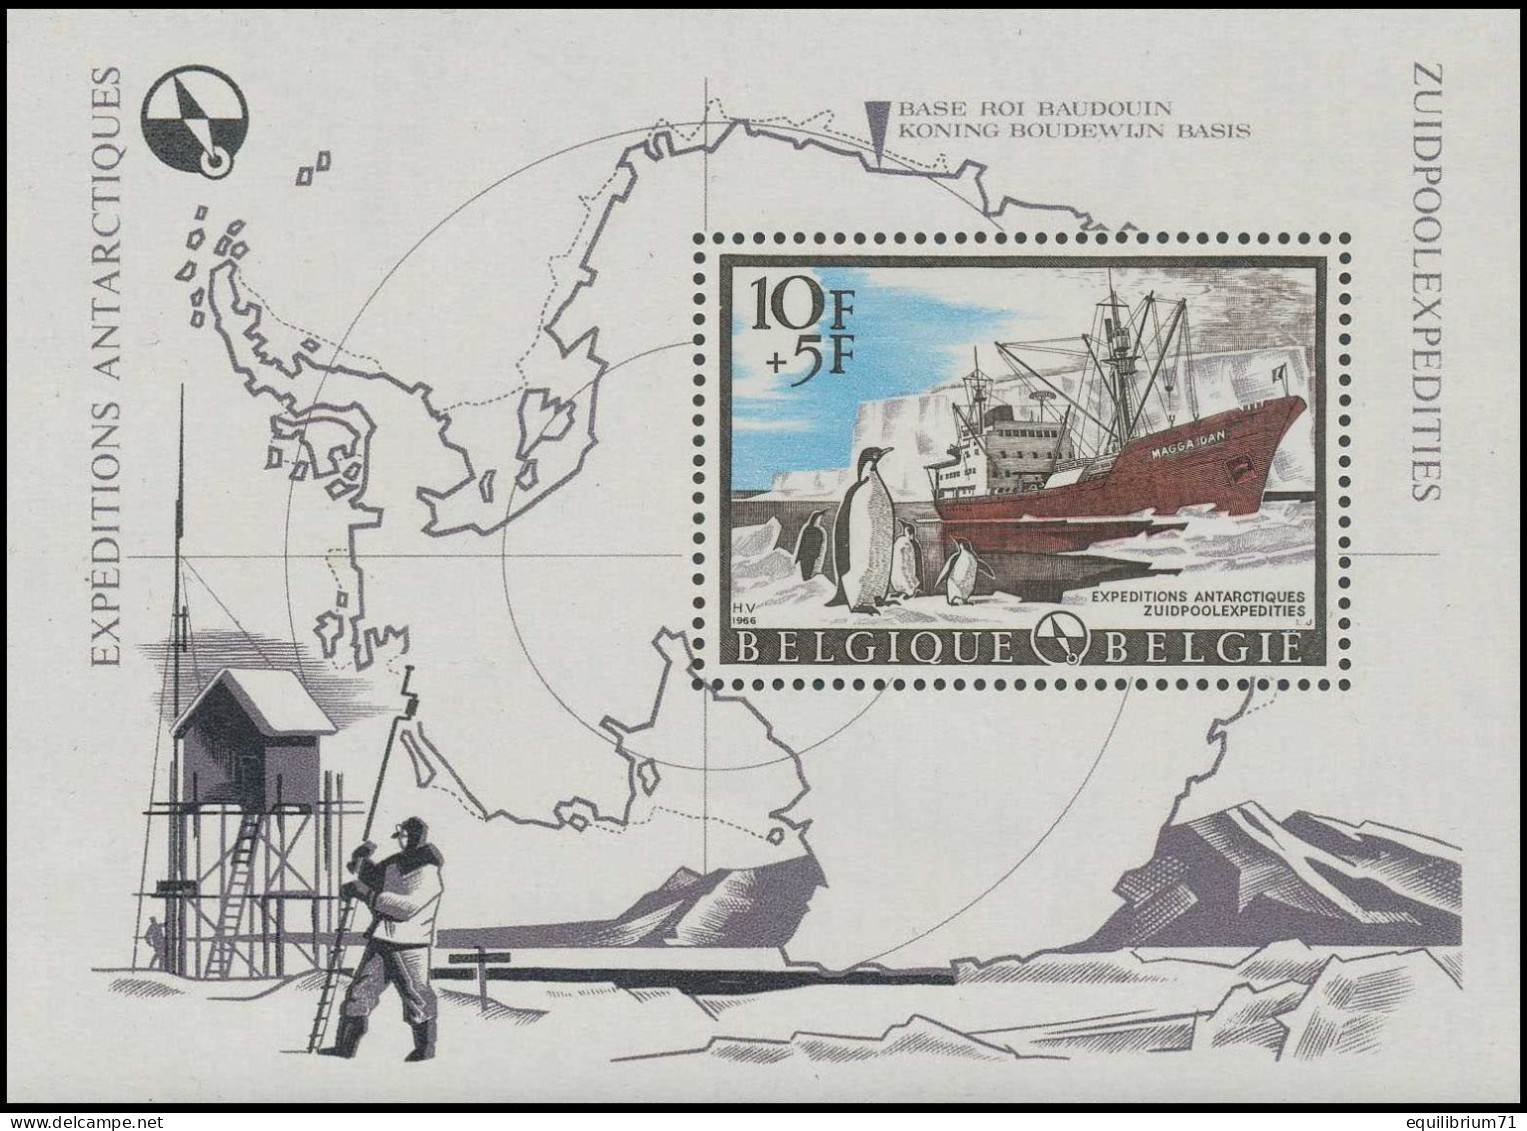 BL42**(1394) - Expéditions Antarctiques / Zuidpoolexpedities / Antarktis-Expeditionen / Antarctic Expedition - BELGIQUE - Explorateurs & Célébrités Polaires